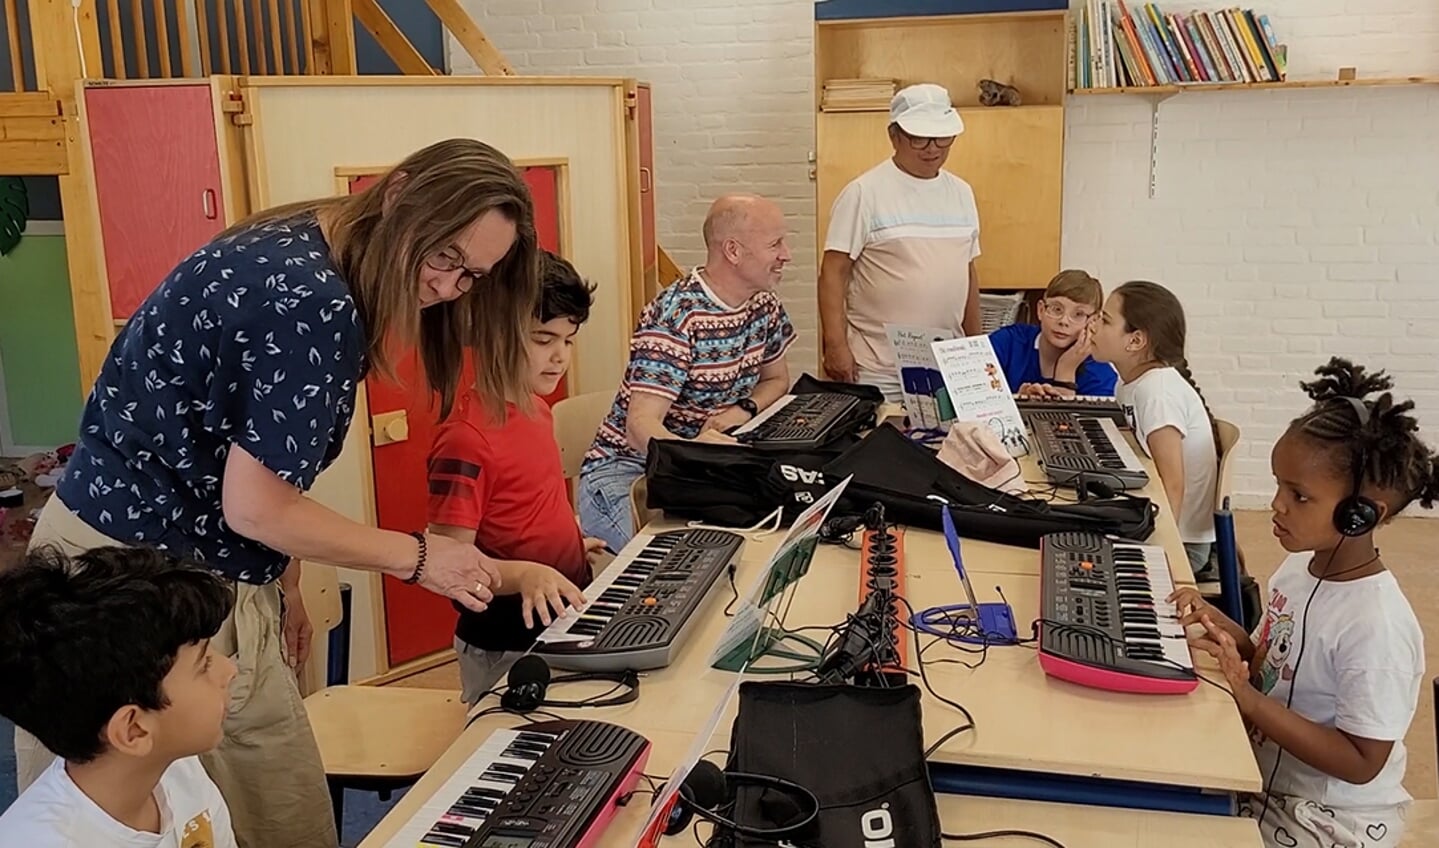 Muziekles tijdens de zomerschool in Westervoort: "Door muziekbeleving gaat er een hele wereld voor deze kinderen open"